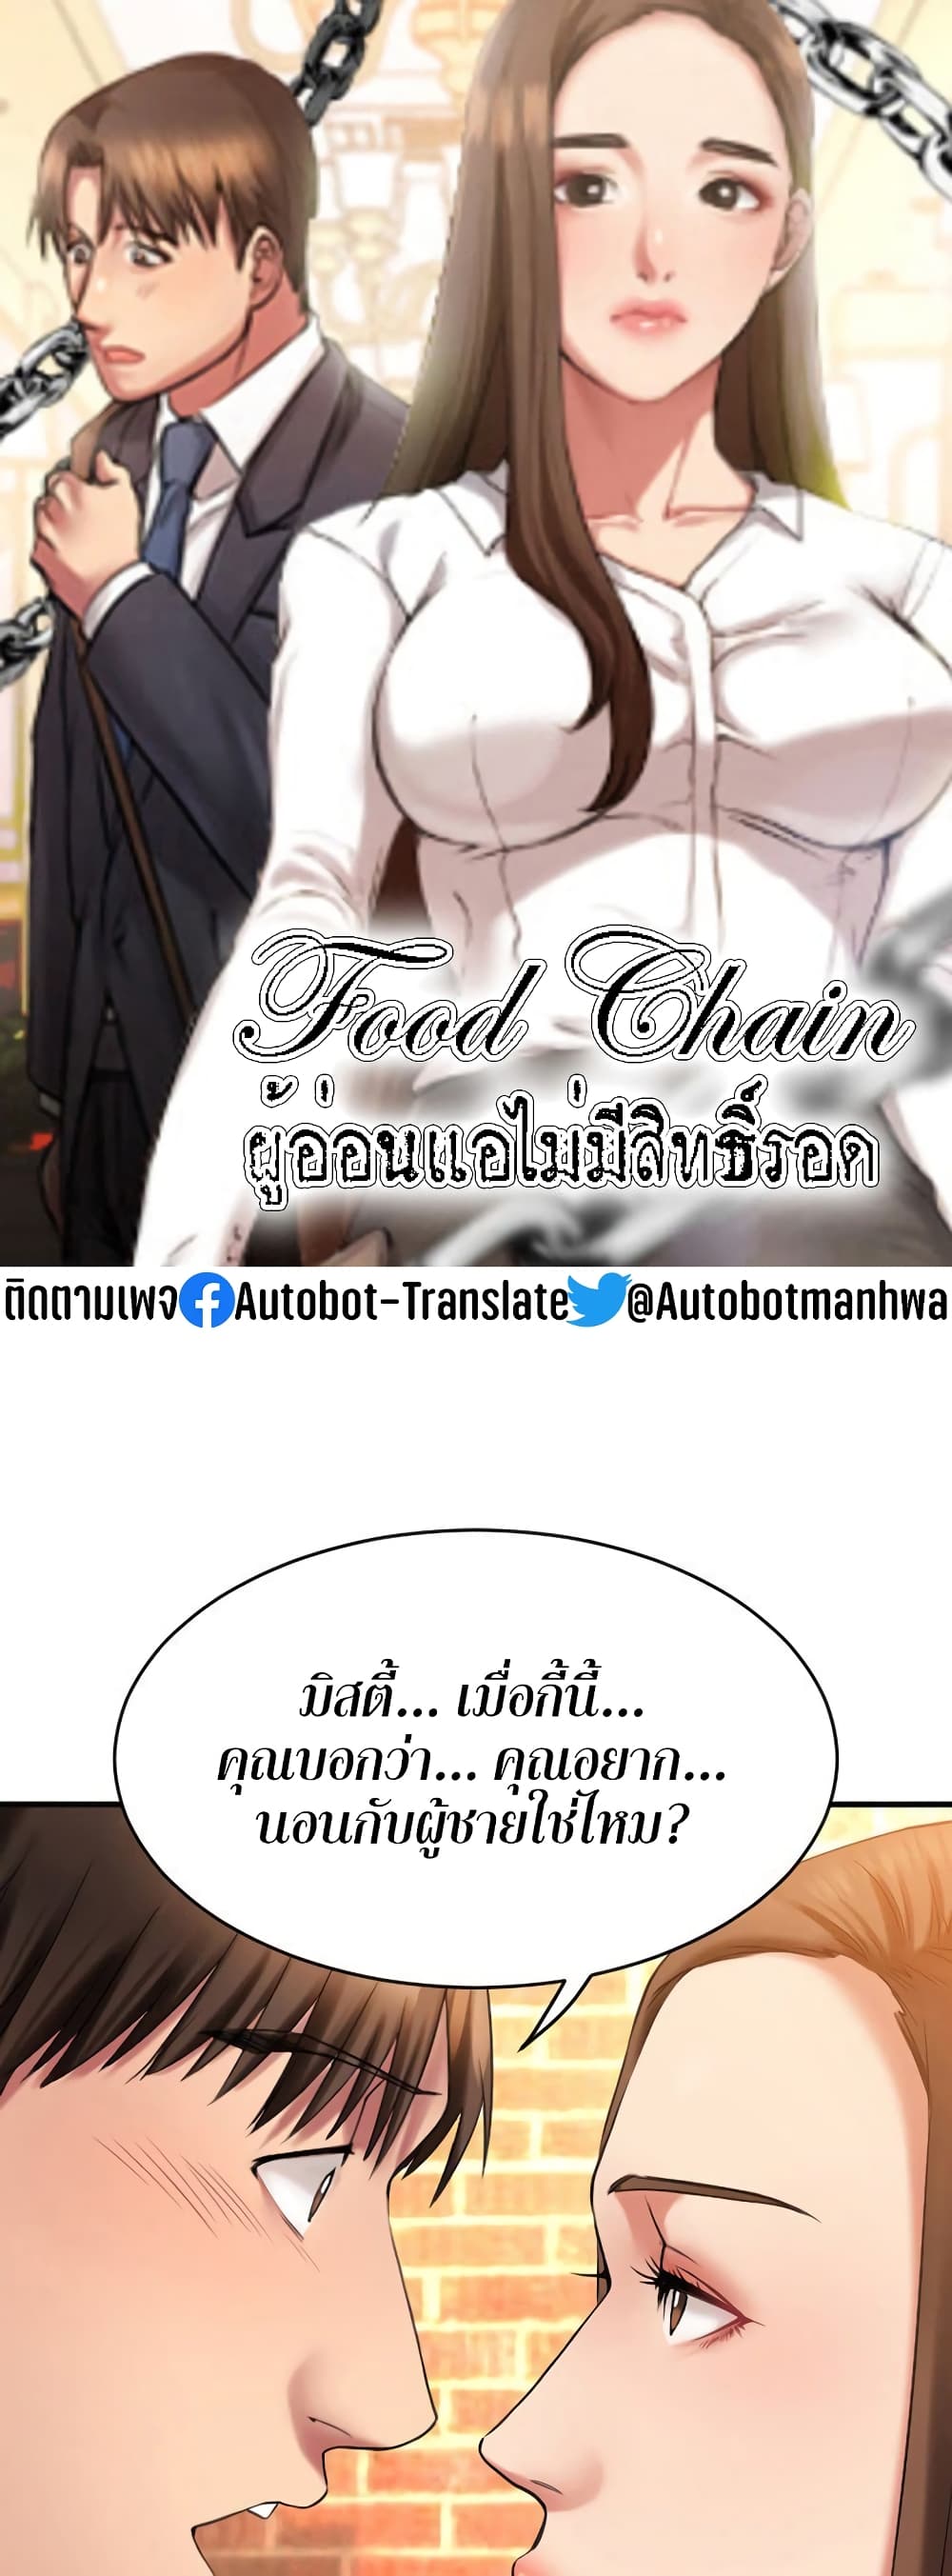 Food Chain 6 (1)